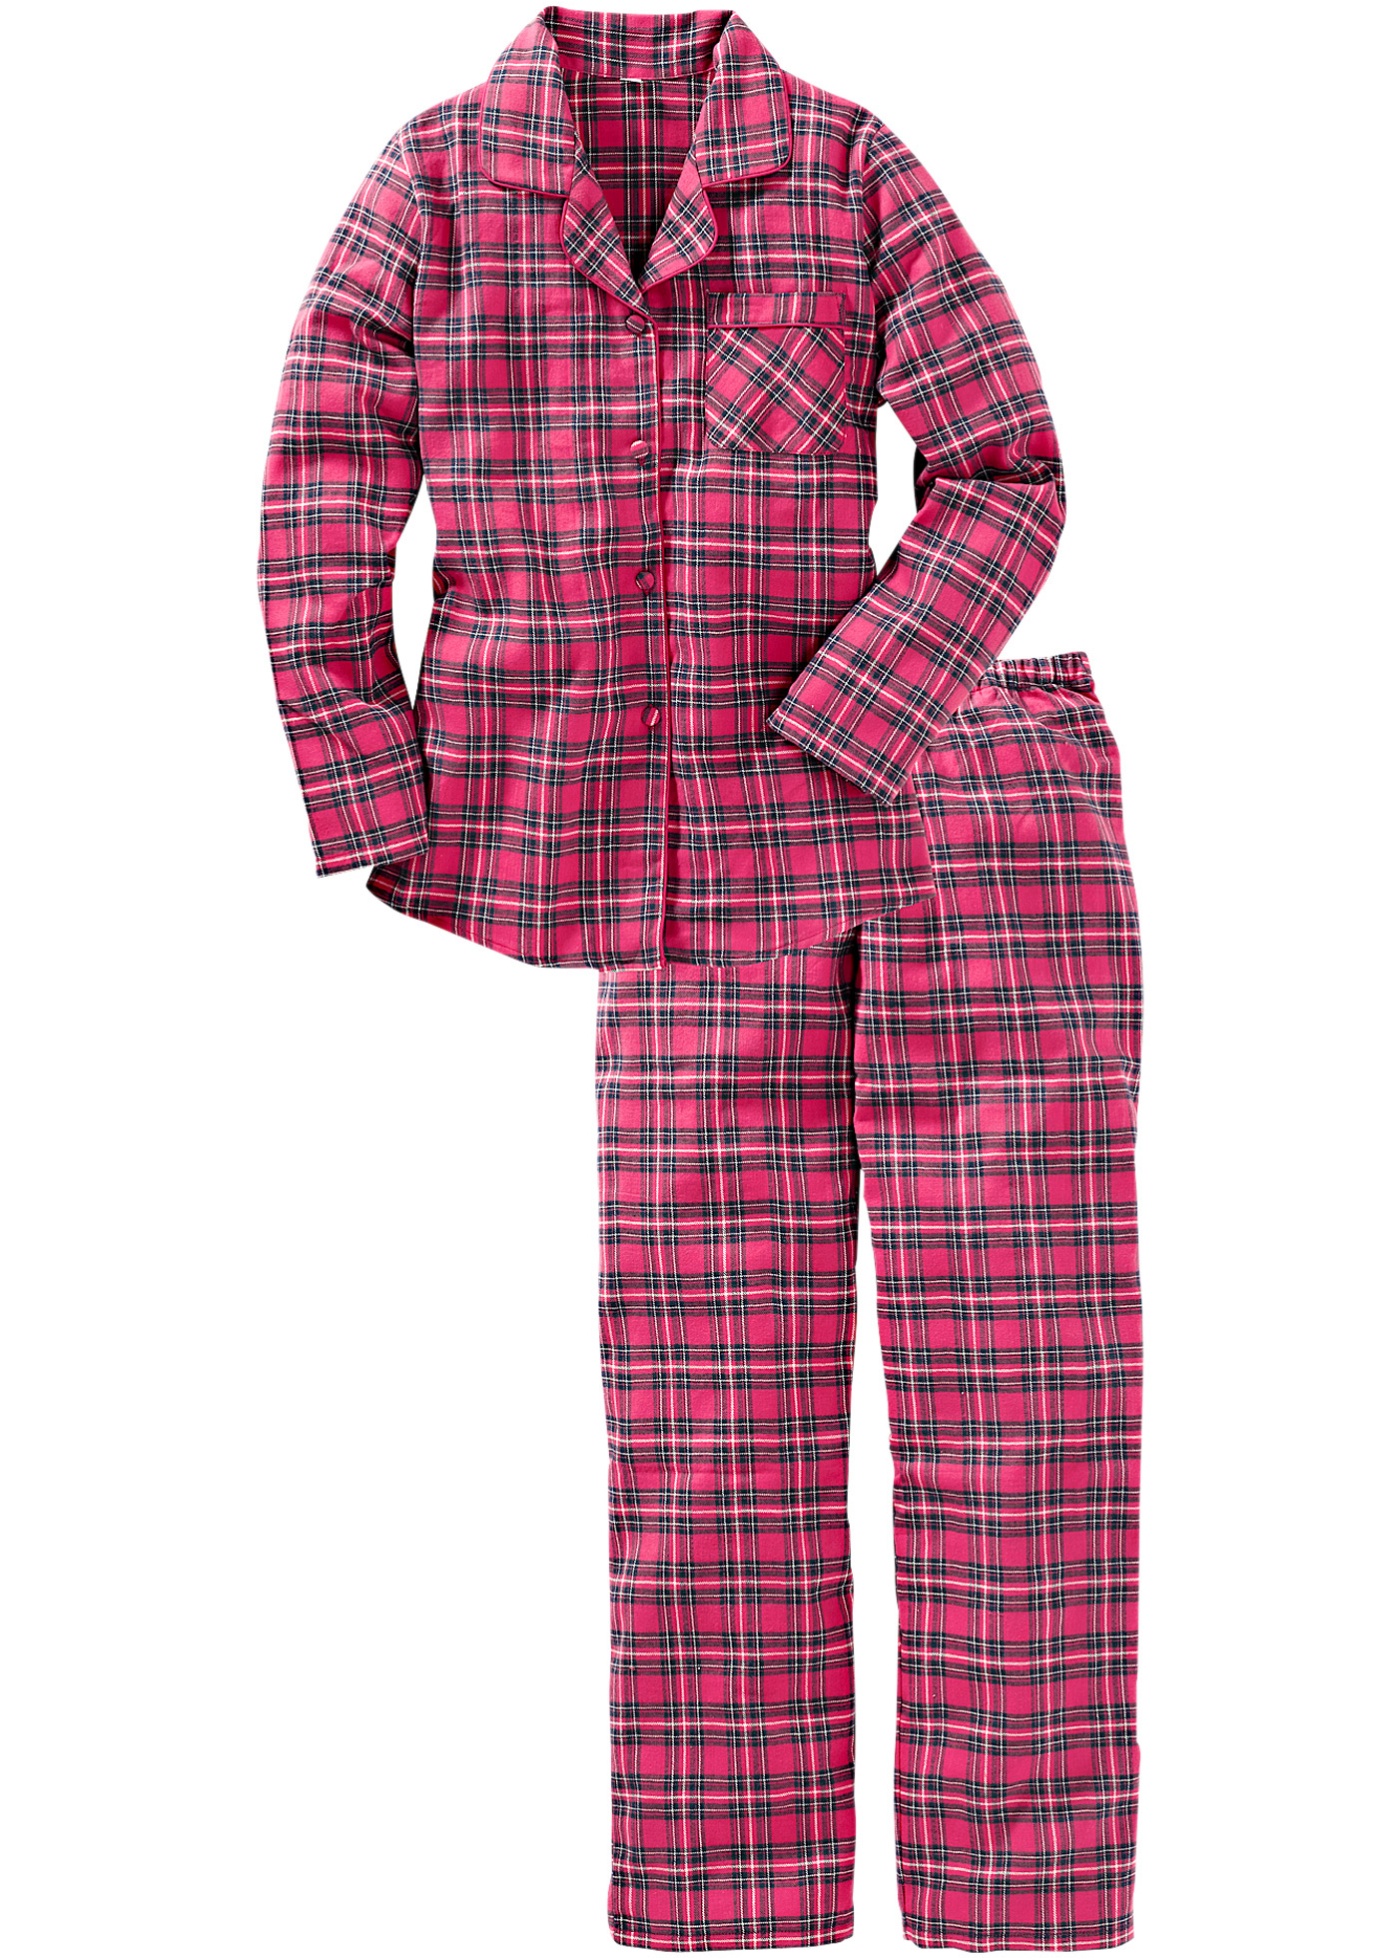 Купить пижаму екатеринбург. Bonprix фланелевая пижама. Фланелевая пижама мужская юникло. Пижама мужская фланелевая 52-54/176-182". Пижама Саваж фланель.